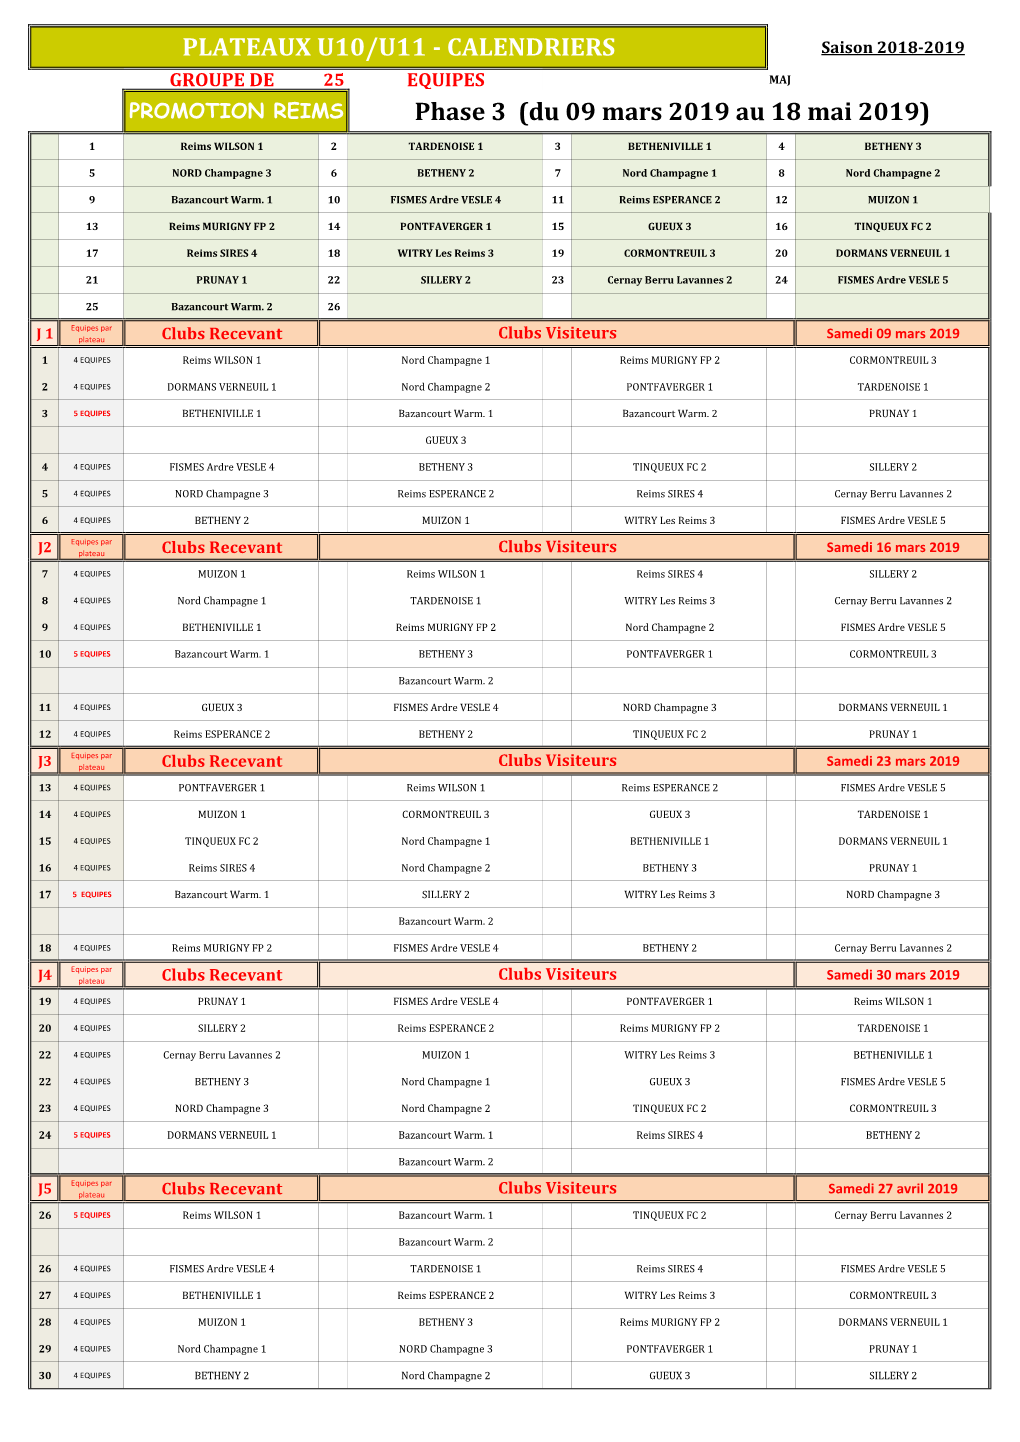 PLATEAUX U10/U11 - CALENDRIERS Saison 2018-2019 GROUPE DE 25 EQUIPES MAJ PROMOTION REIMS Phase 3 (Du 09 Mars 2019 Au 18 Mai 2019)